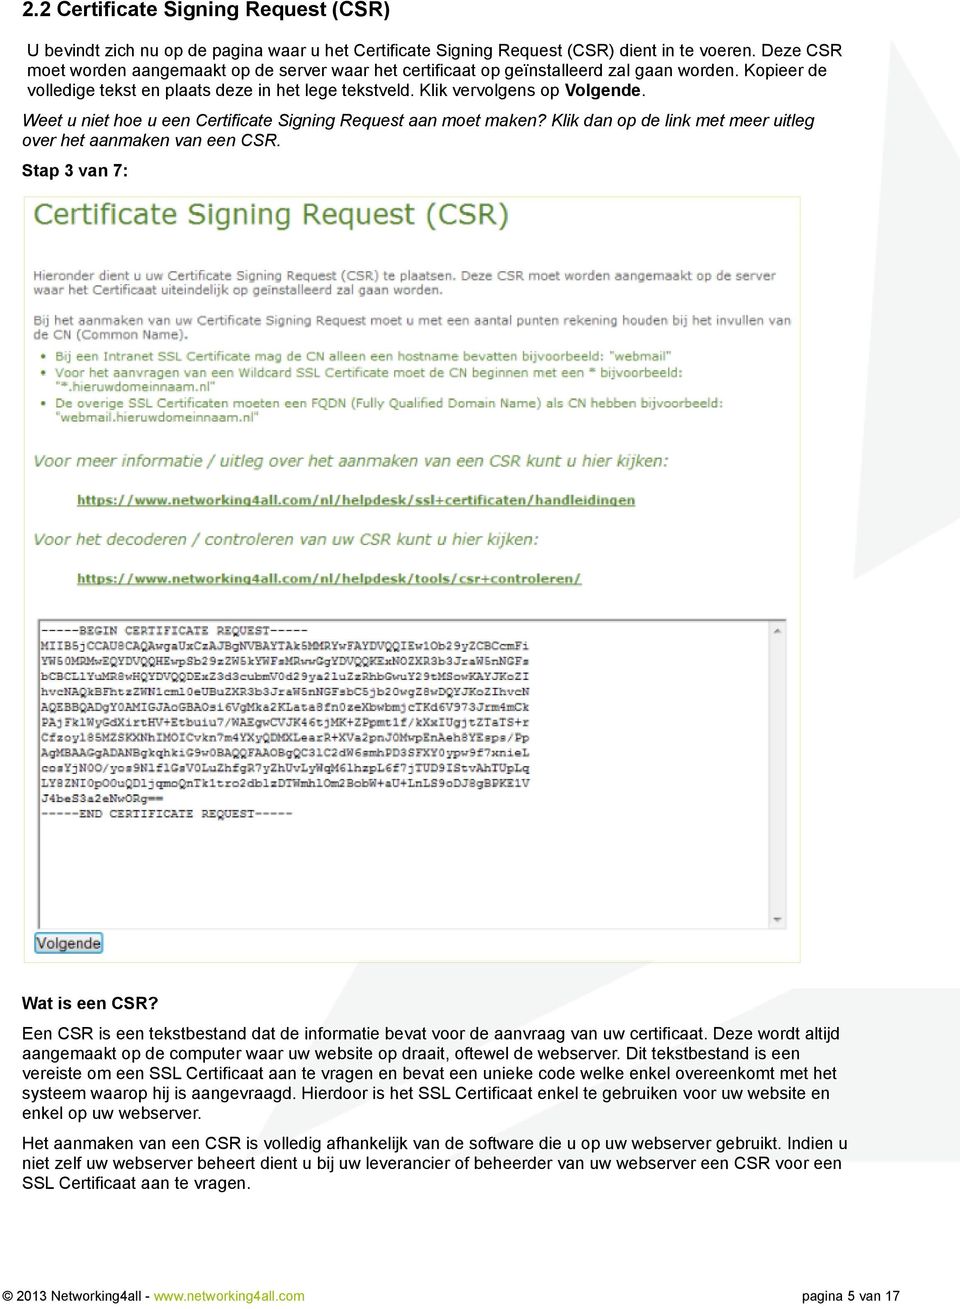 Weet u niet hoe u een Certificate Signing Request aan moet maken? Klik dan op de link met meer uitleg over het aanmaken van een CSR. Stap 3 van 7: Wat is een CSR?